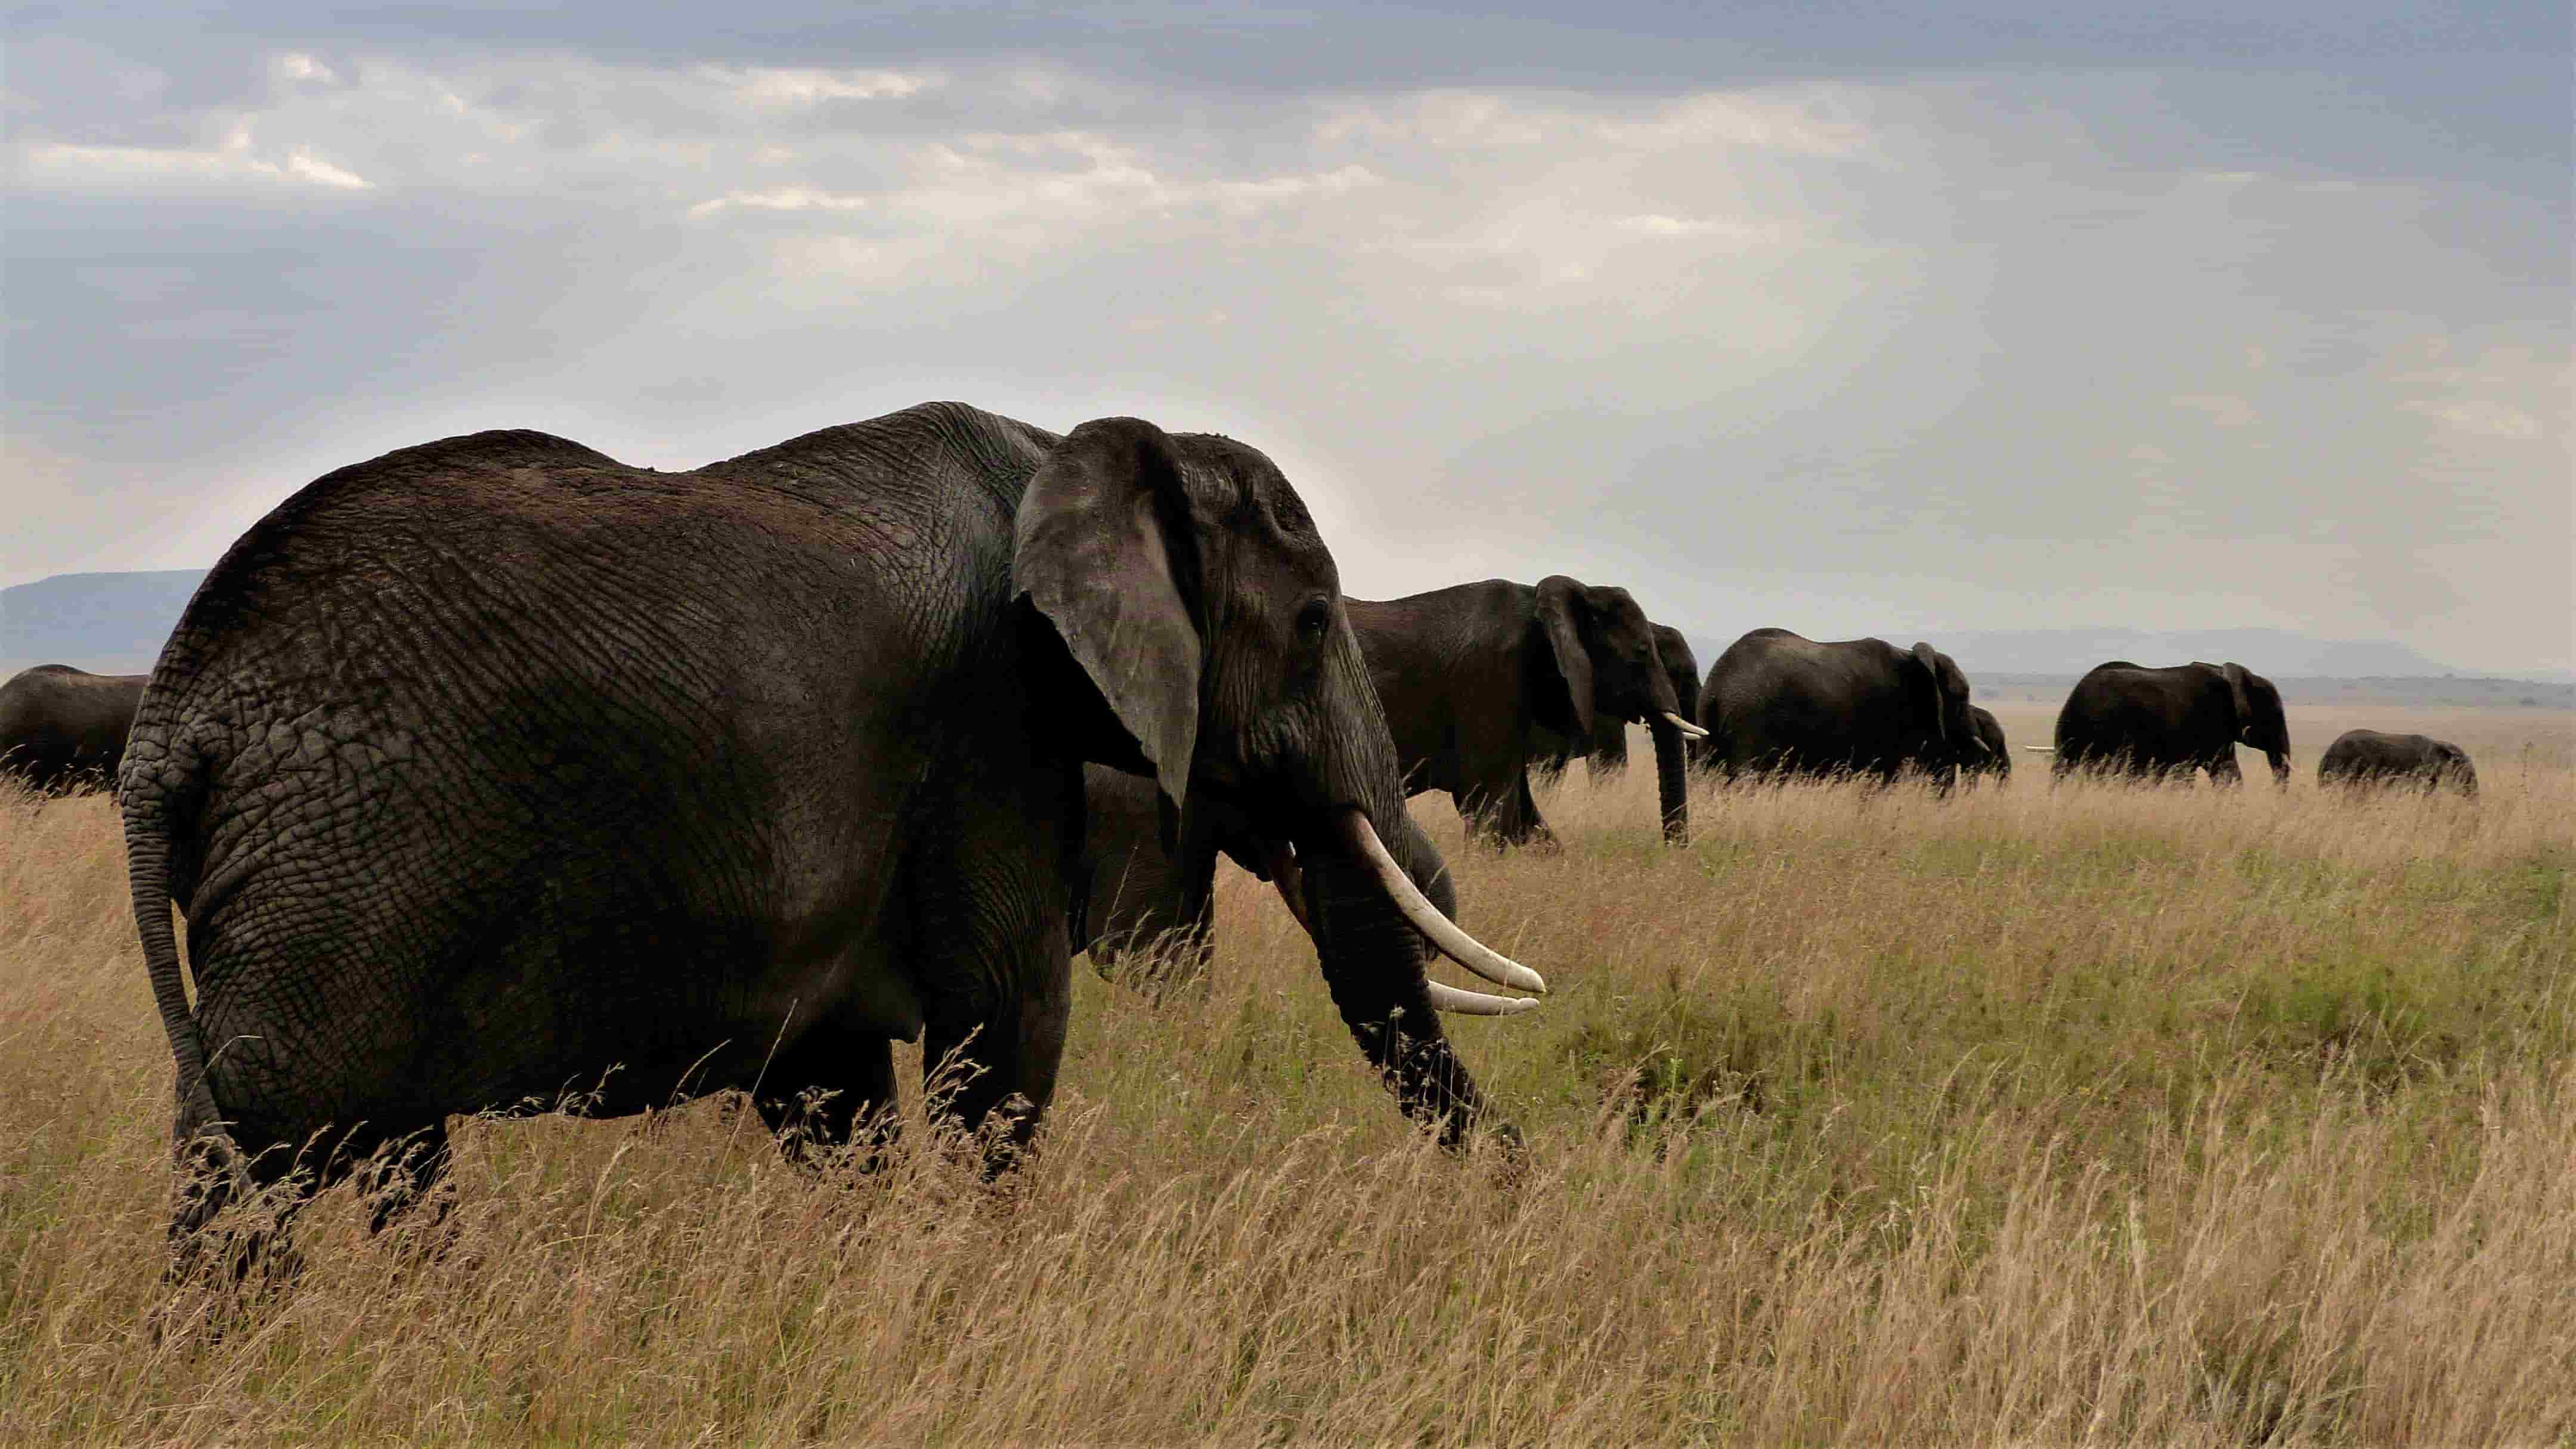 Sobre la importancia de conservar la naturaleza salvaje. El Serengeti no debe morir. BERNHARD GRZIMEK